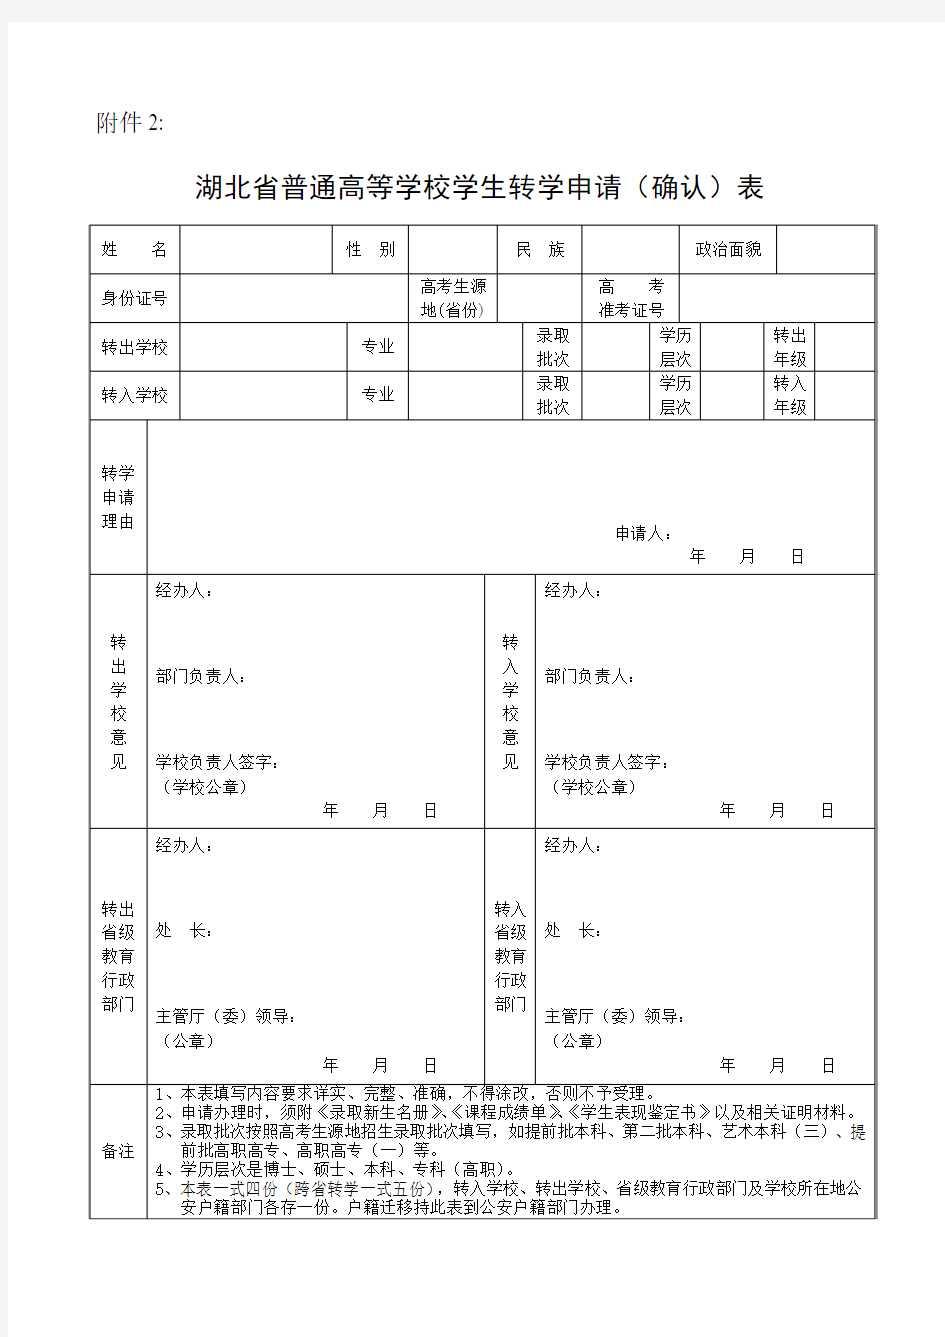 武汉理工大学 湖北省普通高等学校学生转学申请(确认)表